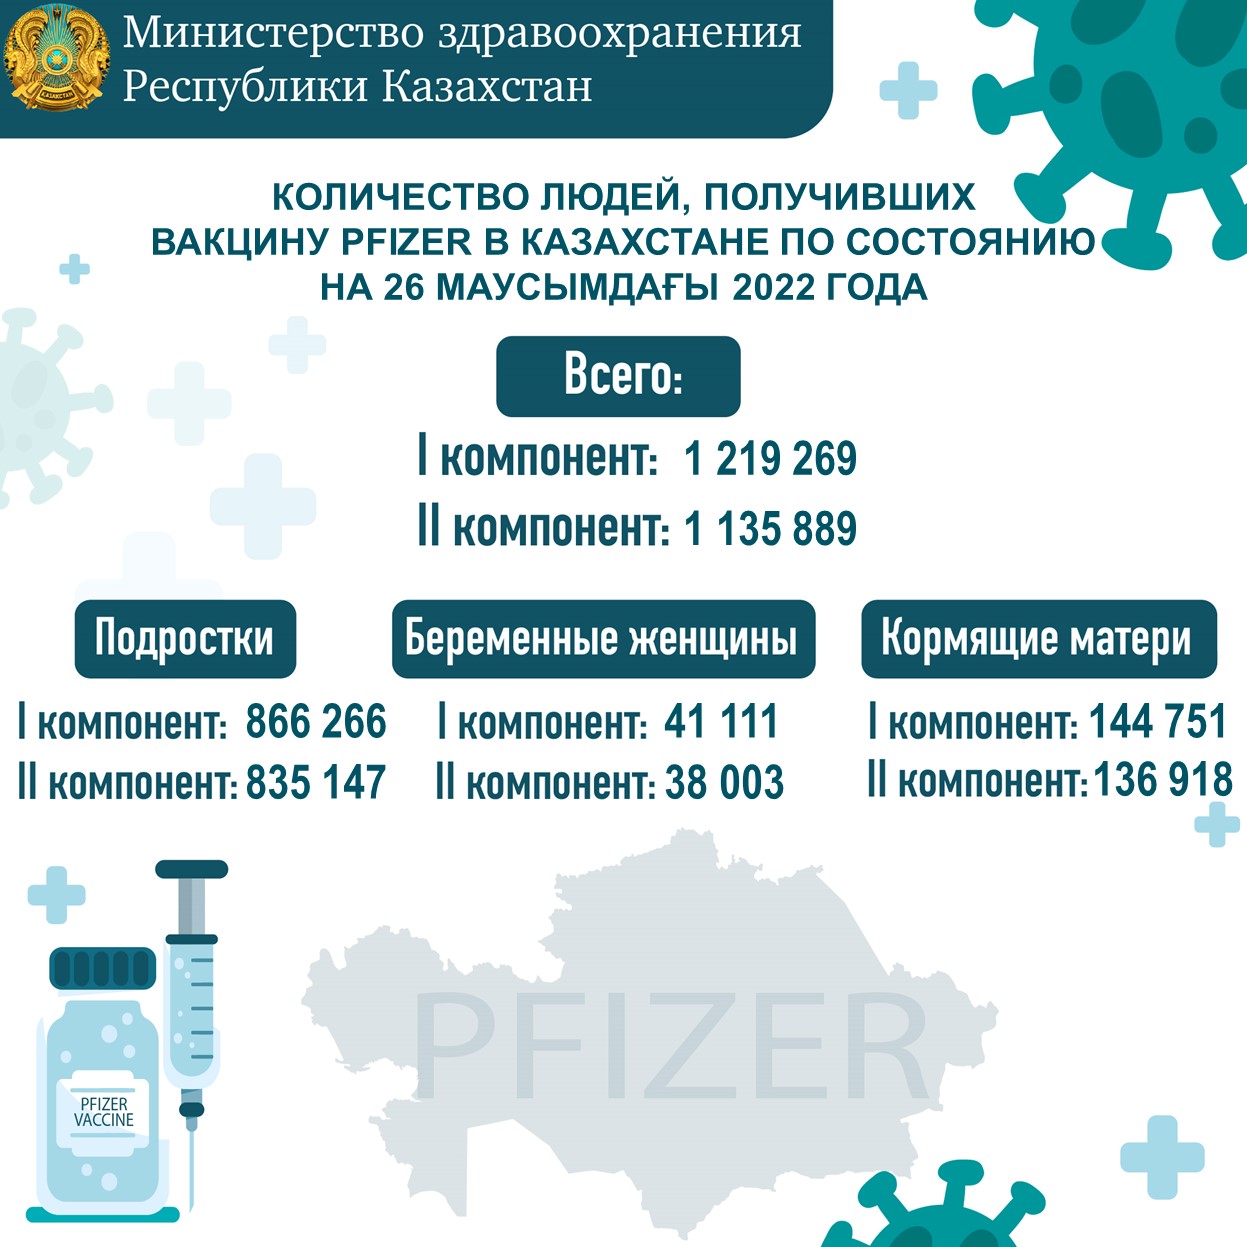 Количество людей, получивших вакцину Рfizer в Казахстане по состоянию на 26 июня 2022 года